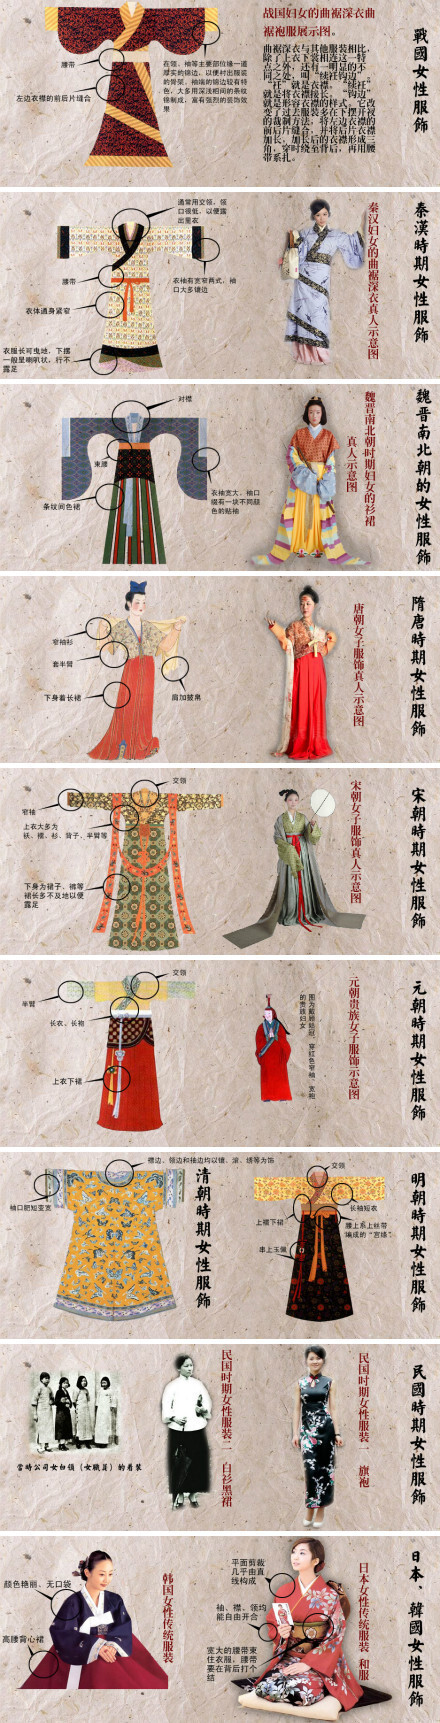 中日文化有差异,同样体现在服装上,来看看中国各朝代的服装和日本和服